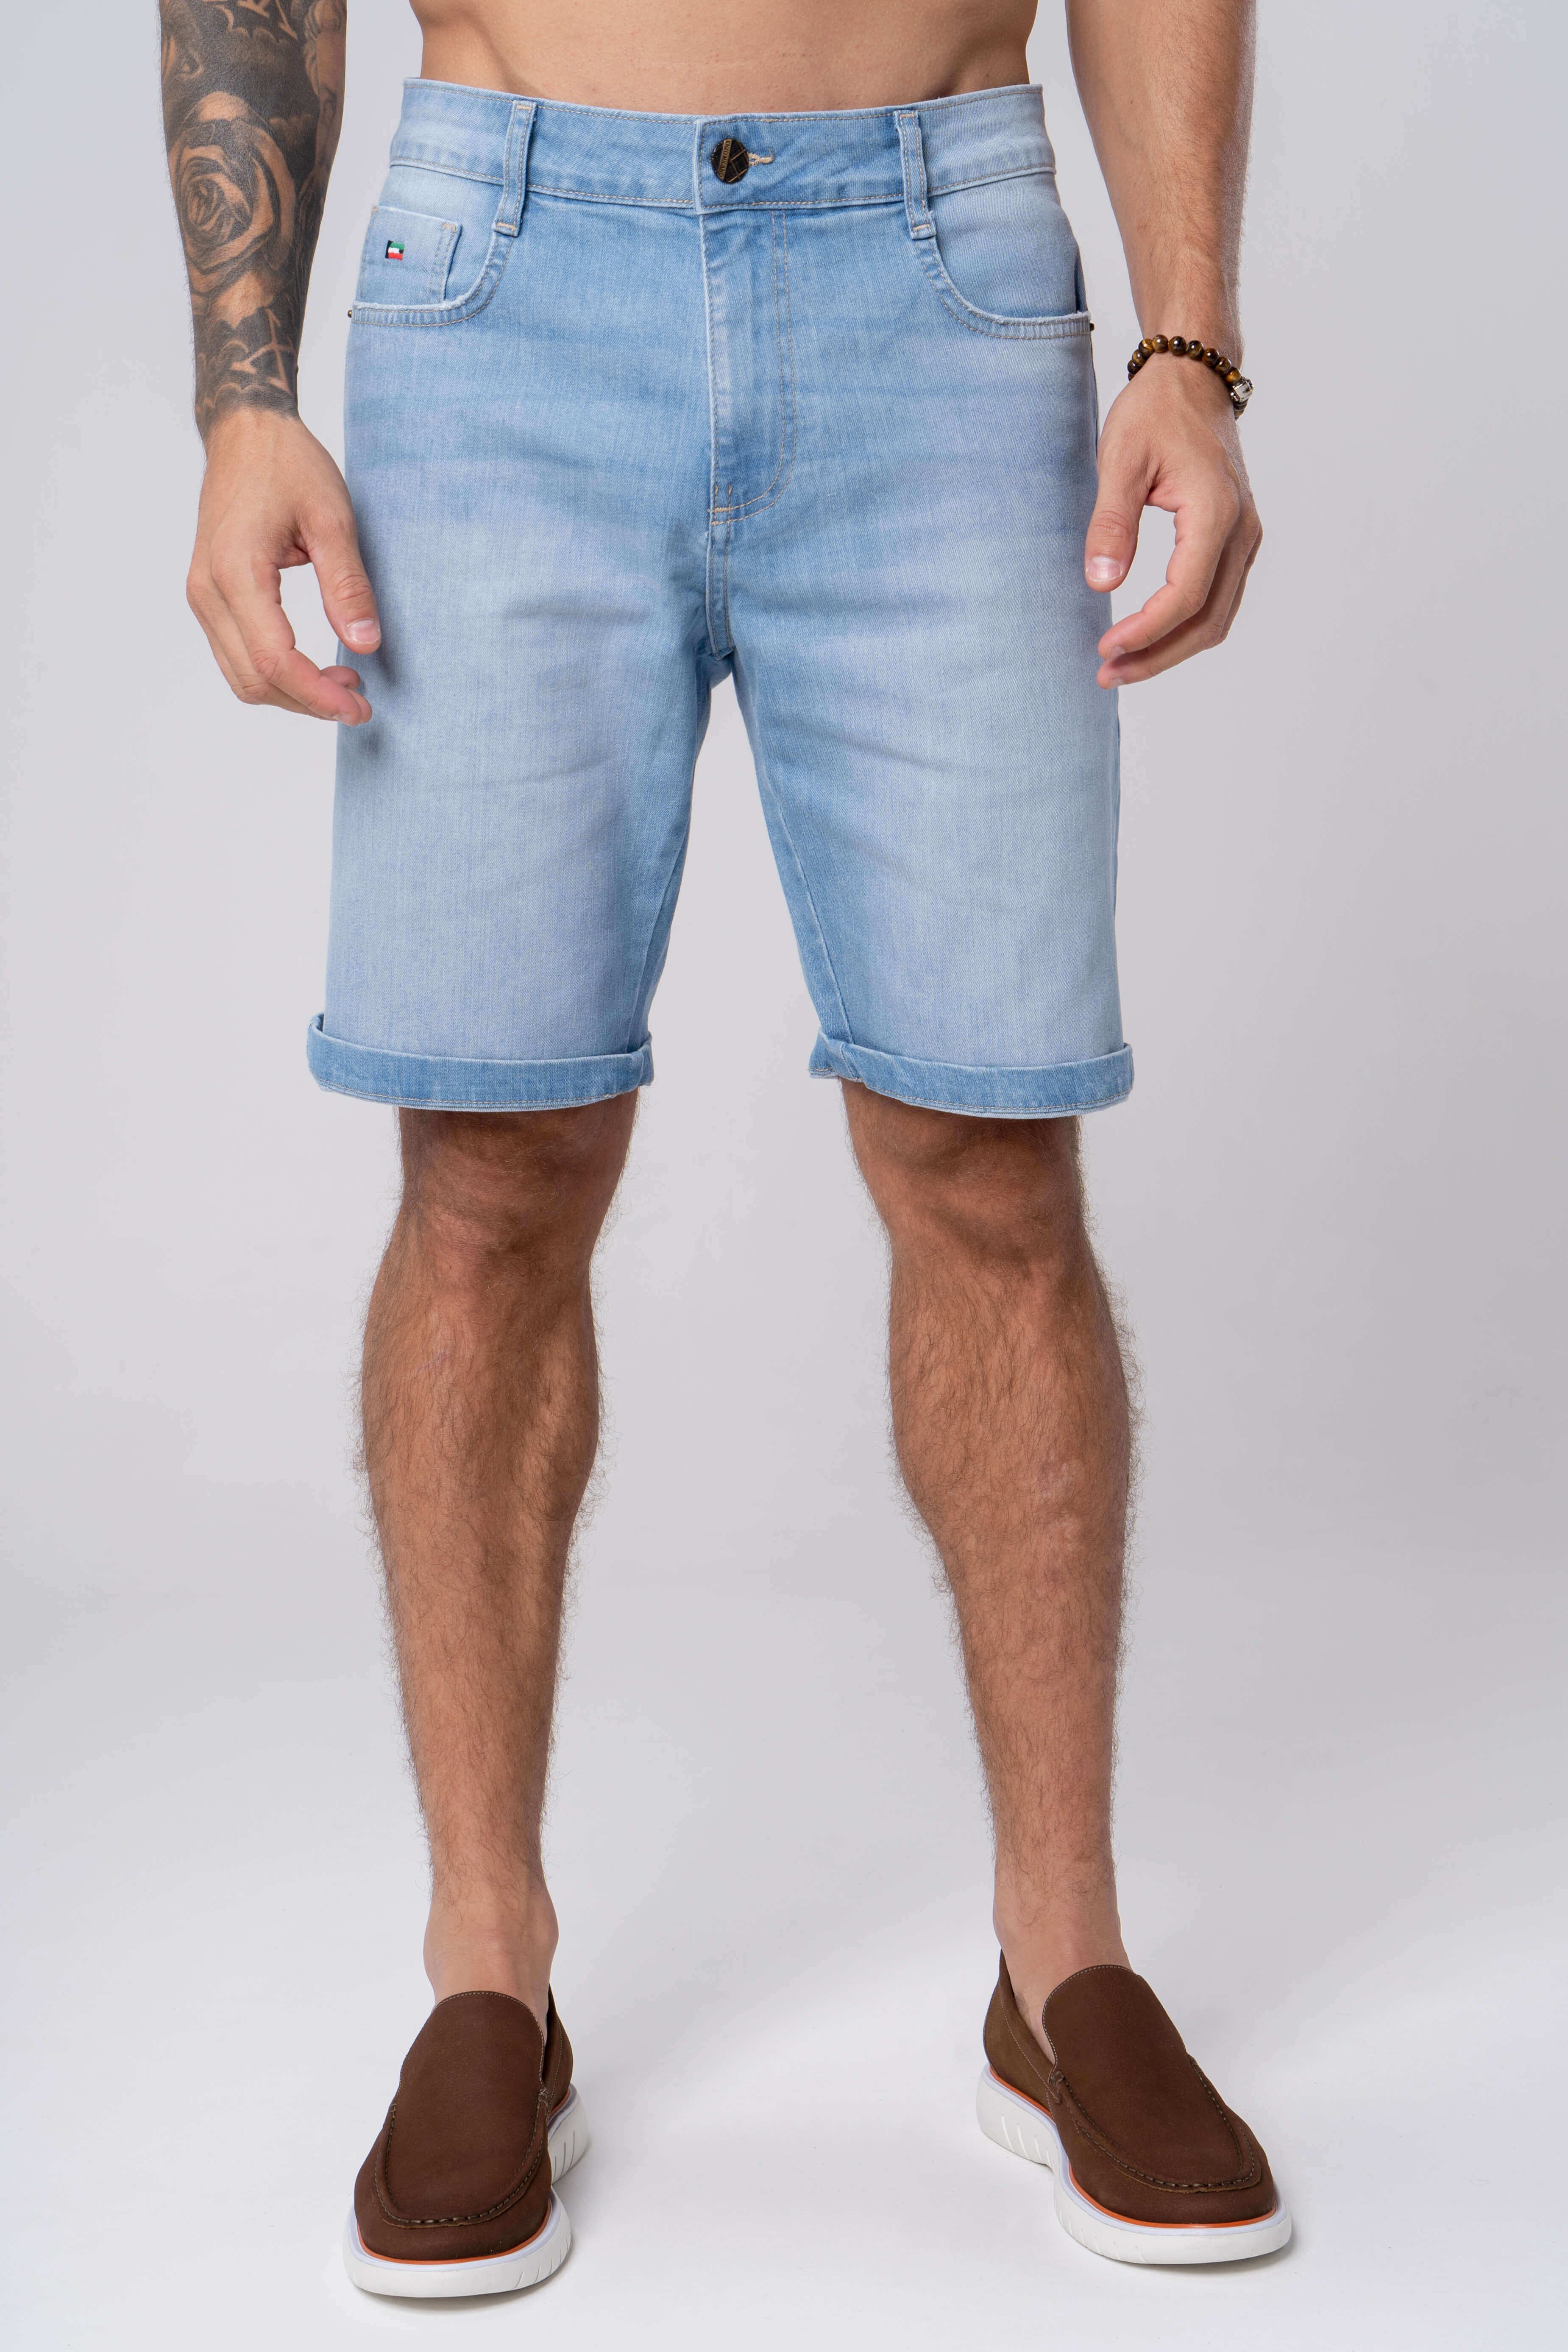 Bermuda Jeans Masculina Short Jeans Modelagem Mais Folgada